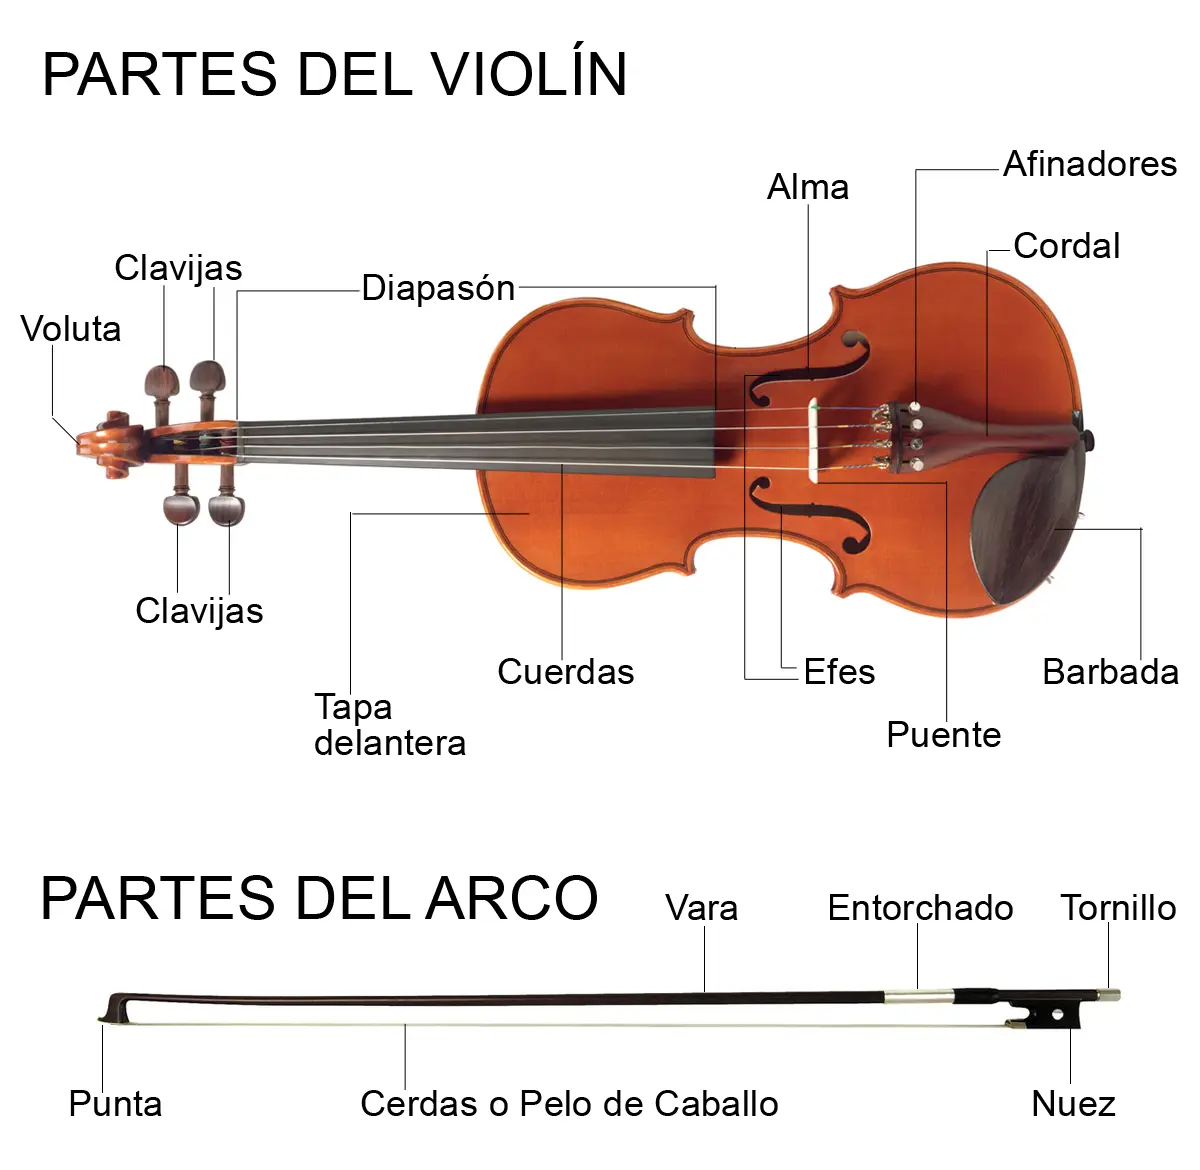 partes del arco del violin - Cómo se llaman los hilos del arco del violín